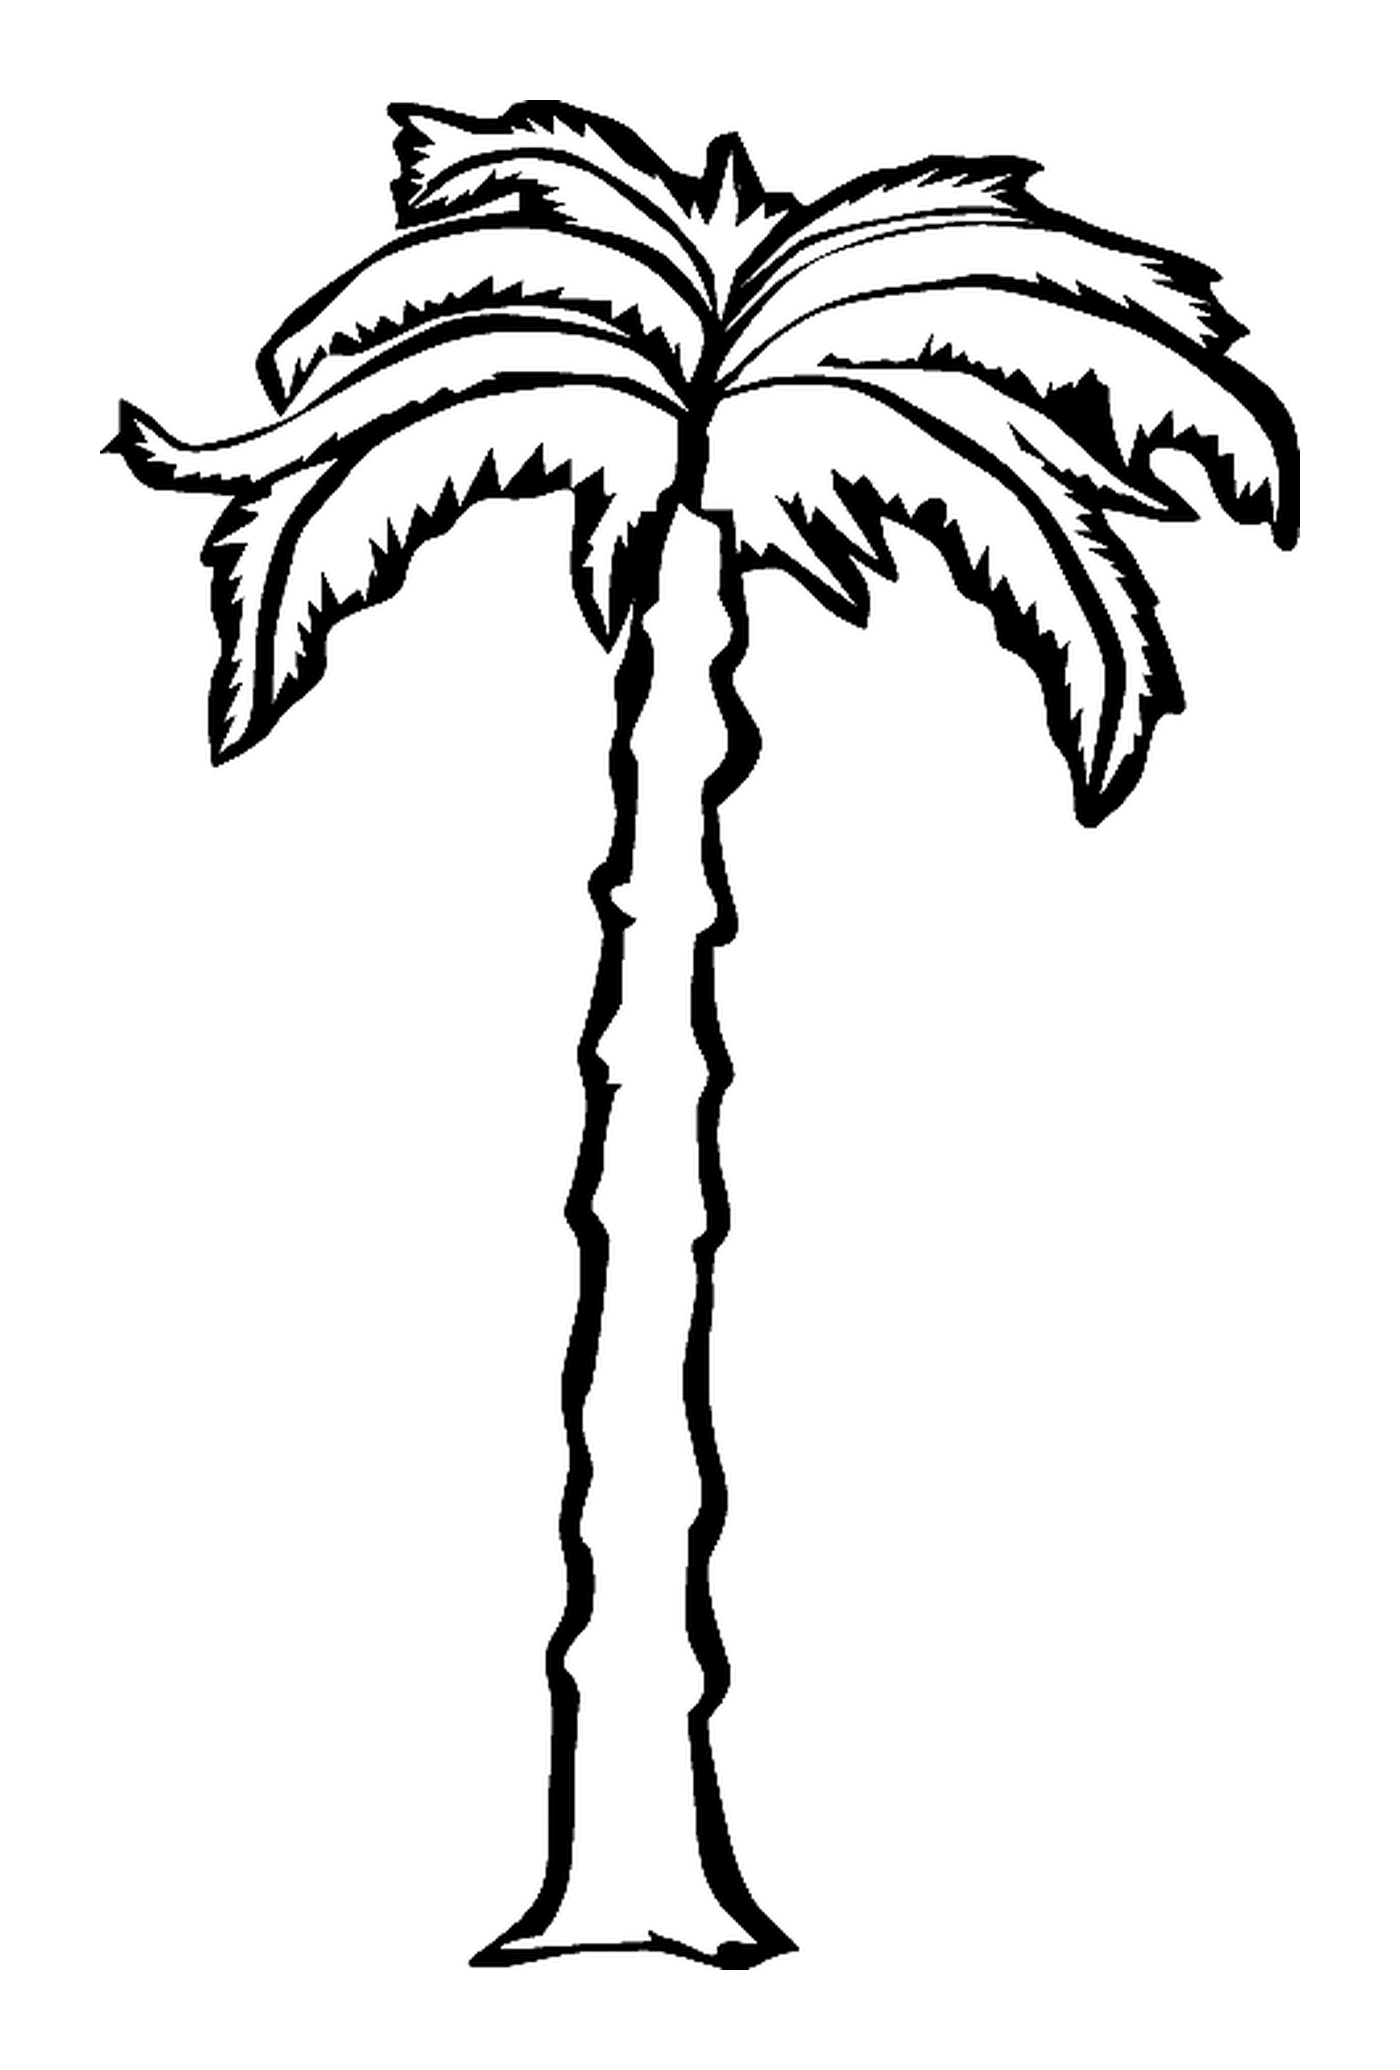  пальмы с длинным стволом 